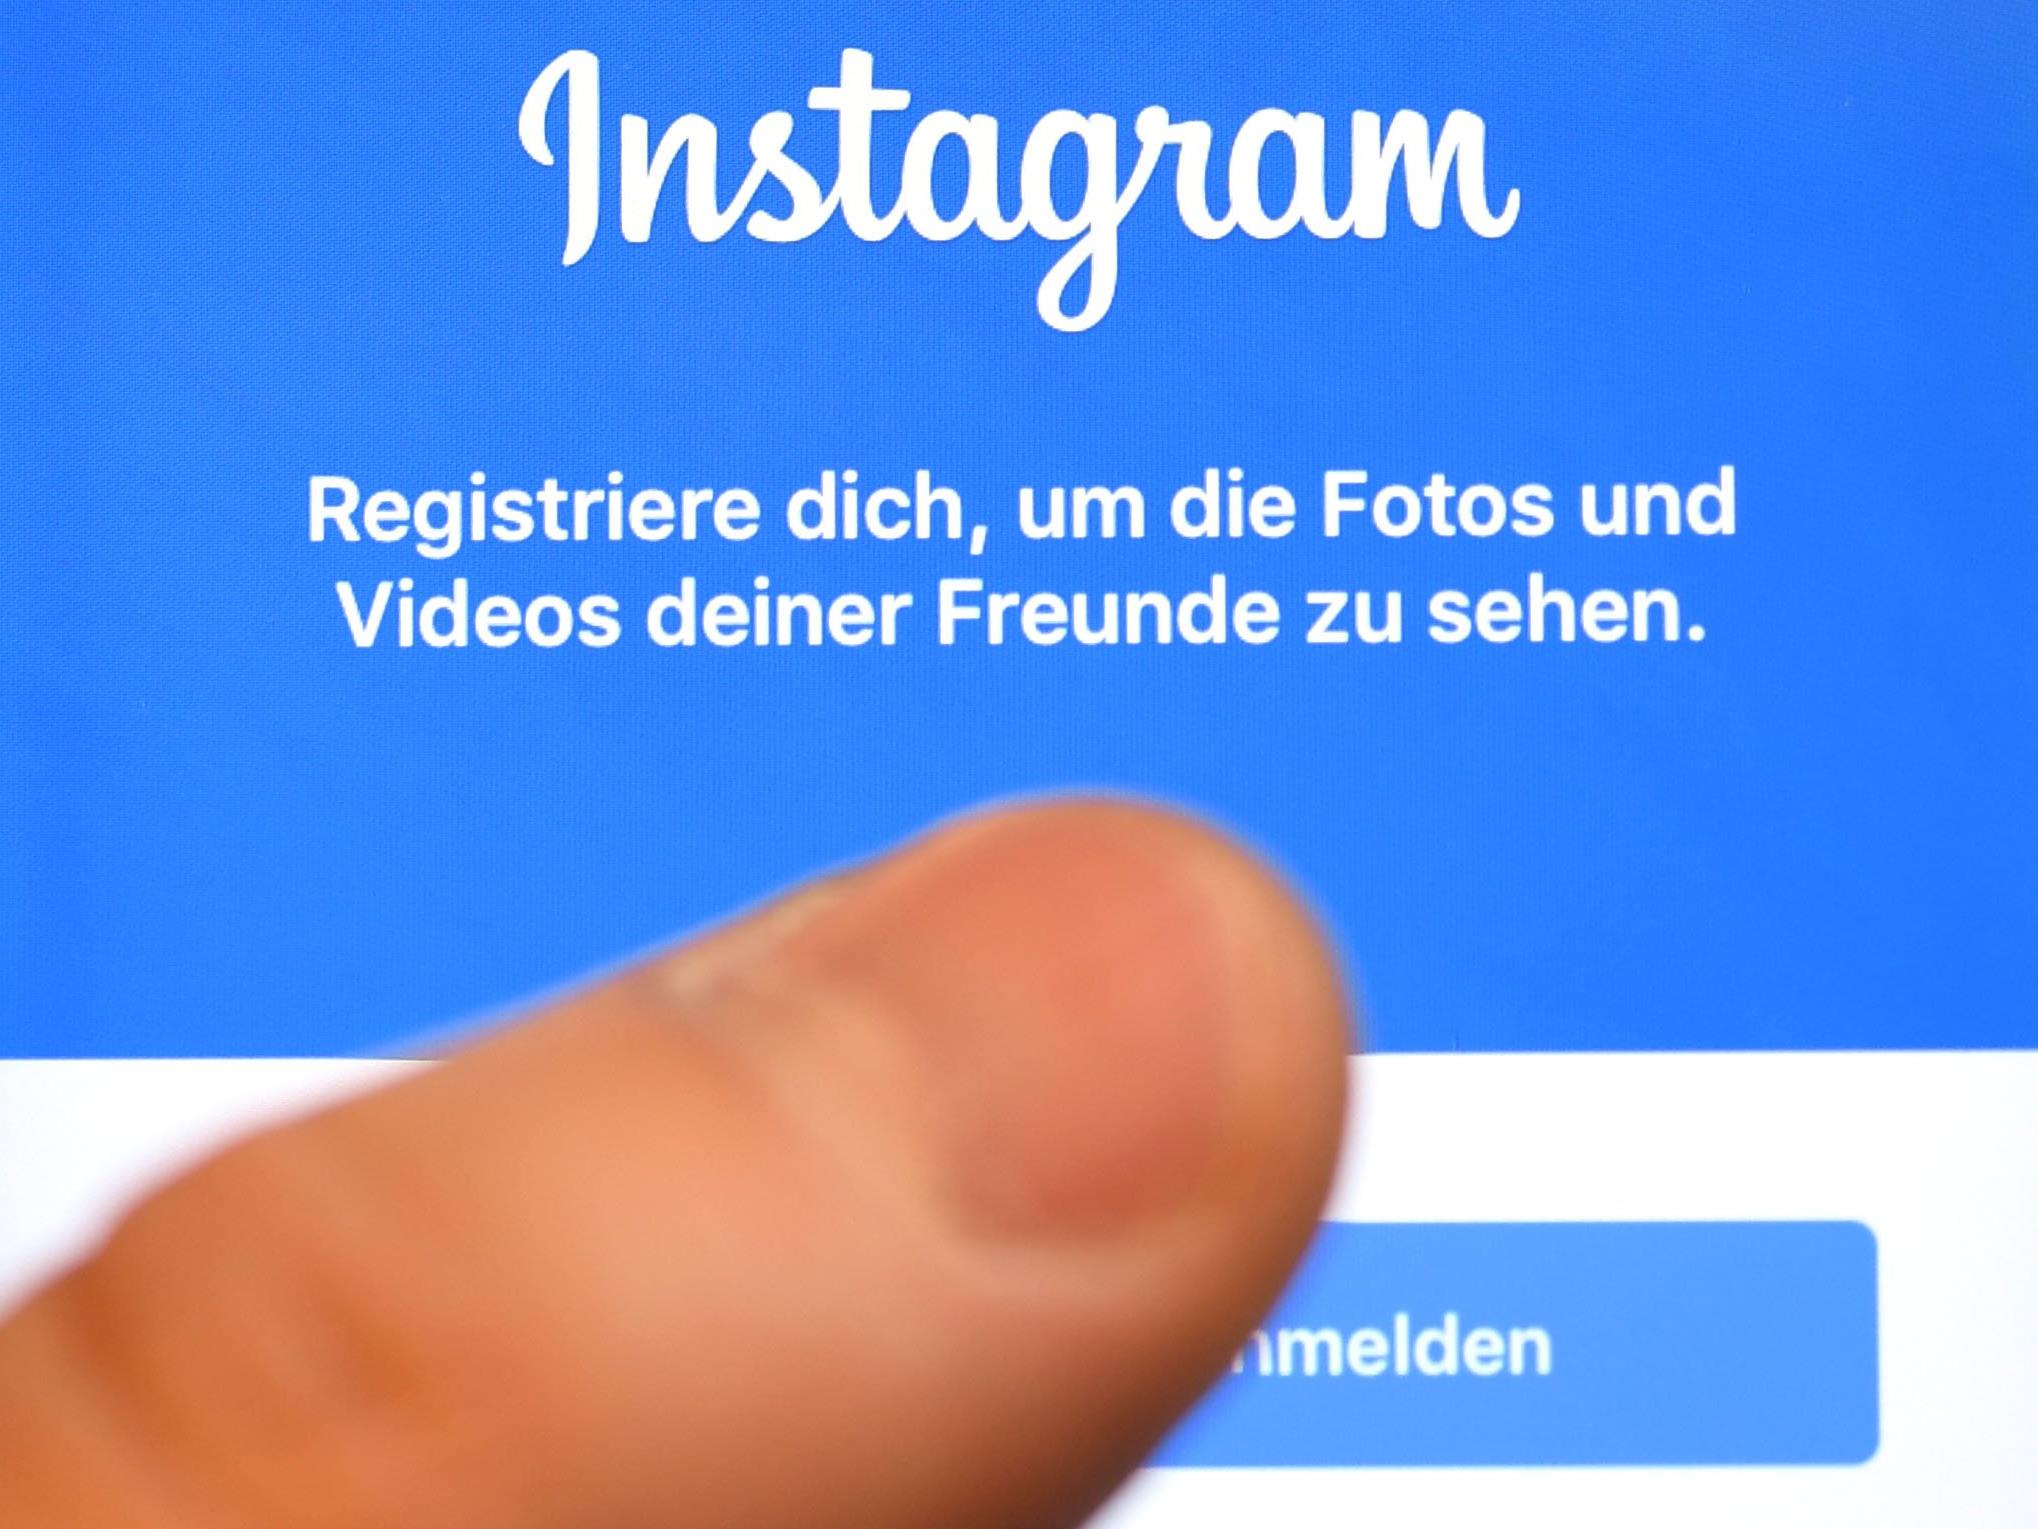 Instagramm will Pinterest Konkurrenz machen.